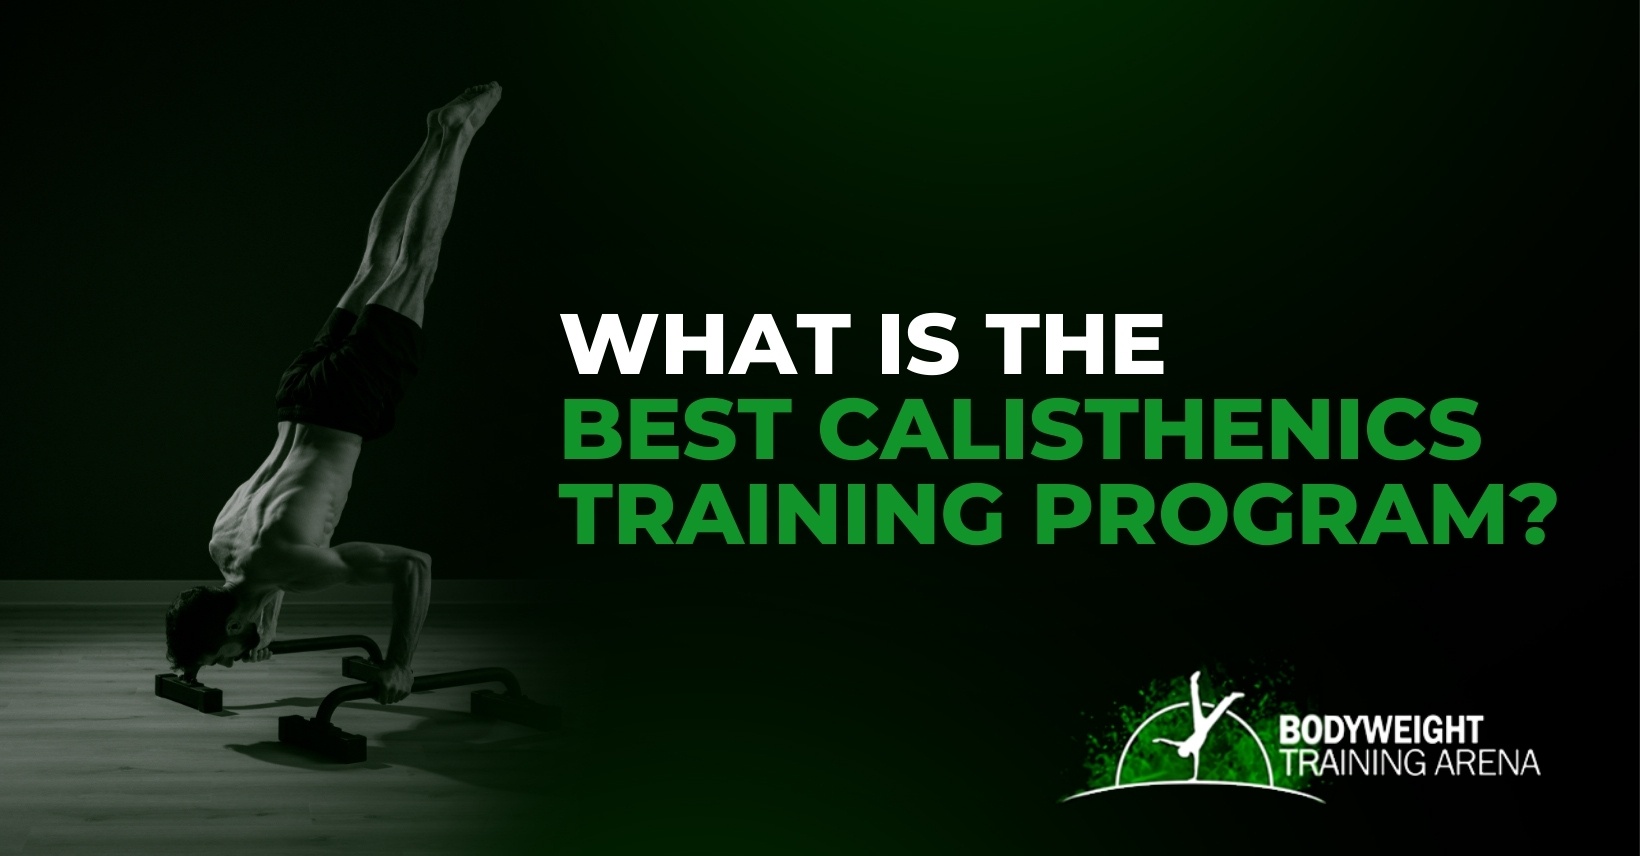 What is the best calisthenics training program?